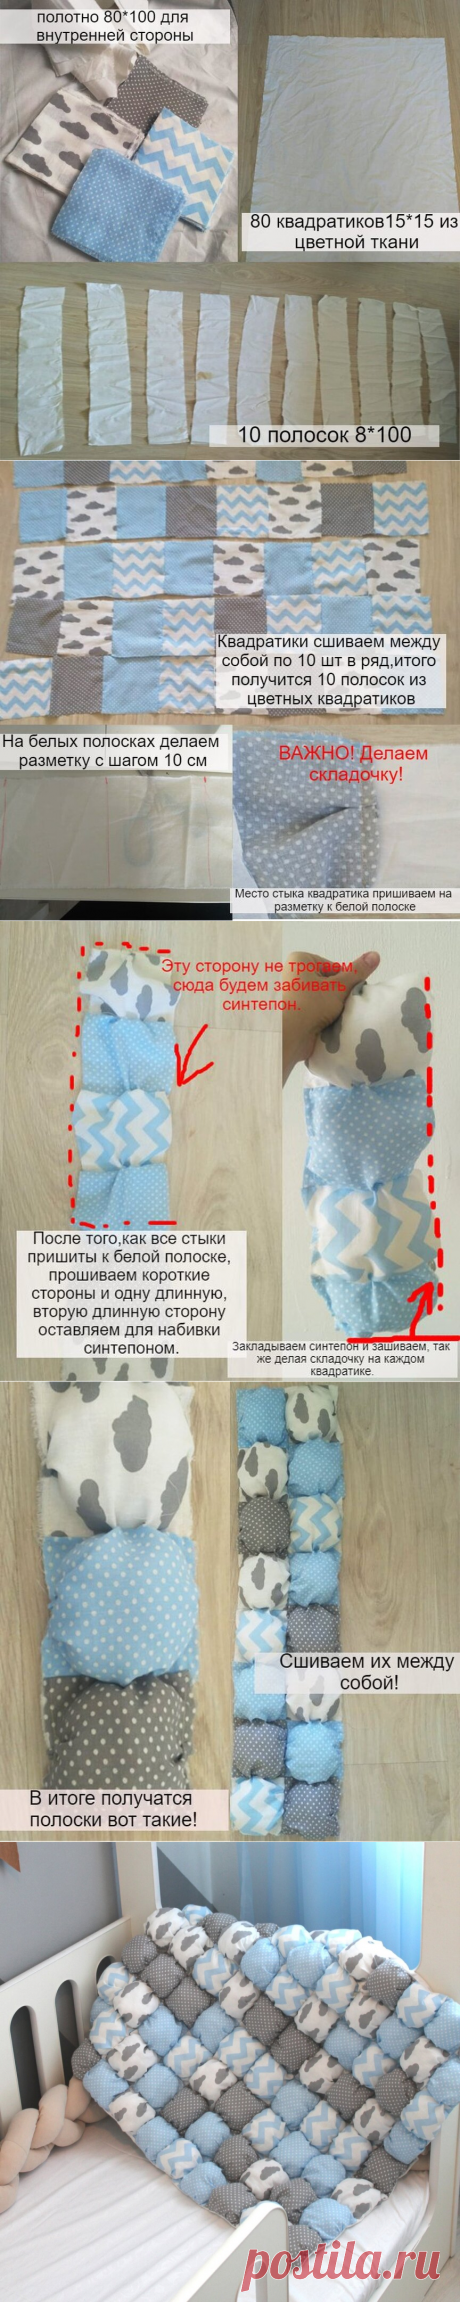 Как сшить одеяло бон-бон: супер-простой способ пошива, получится даже если не умеешь шить | Жизнь в аппартаментах | 36 кв.м. | Яндекс Дзен